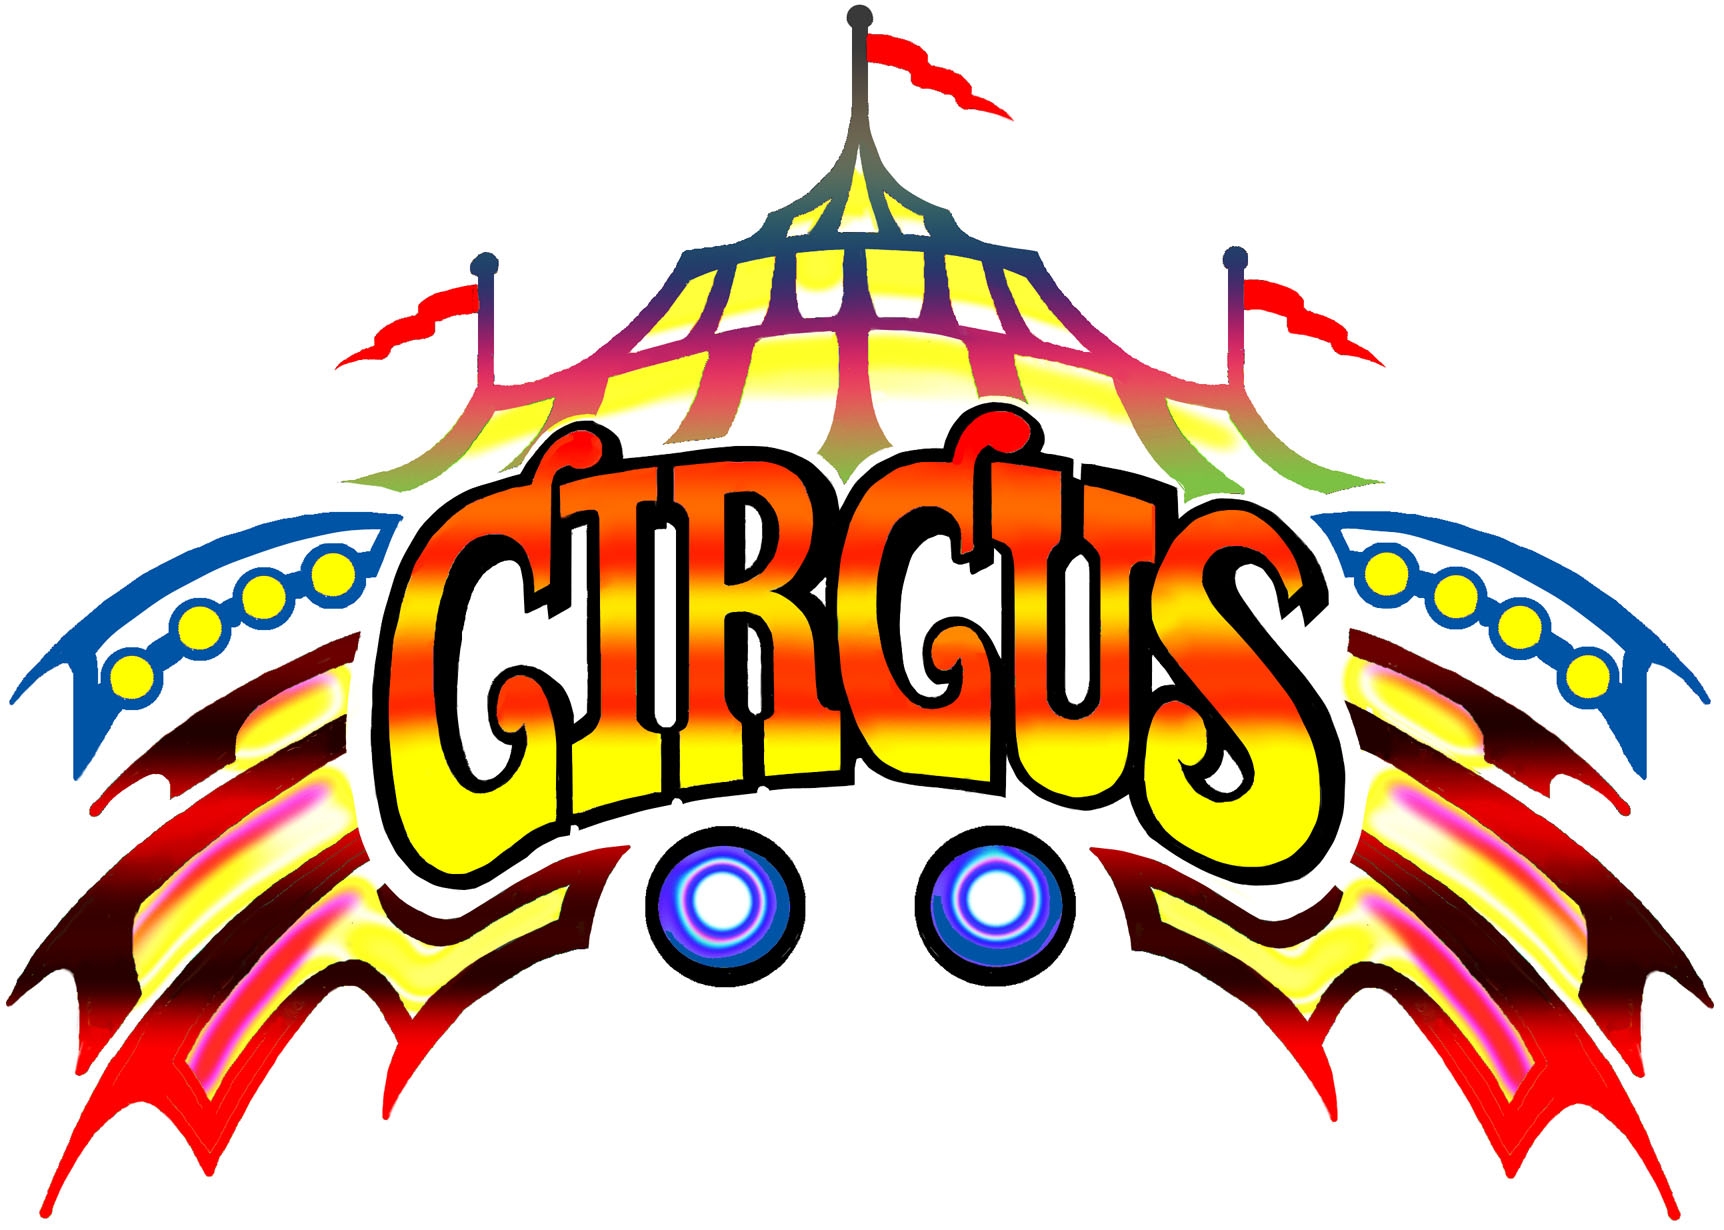 circus 2015